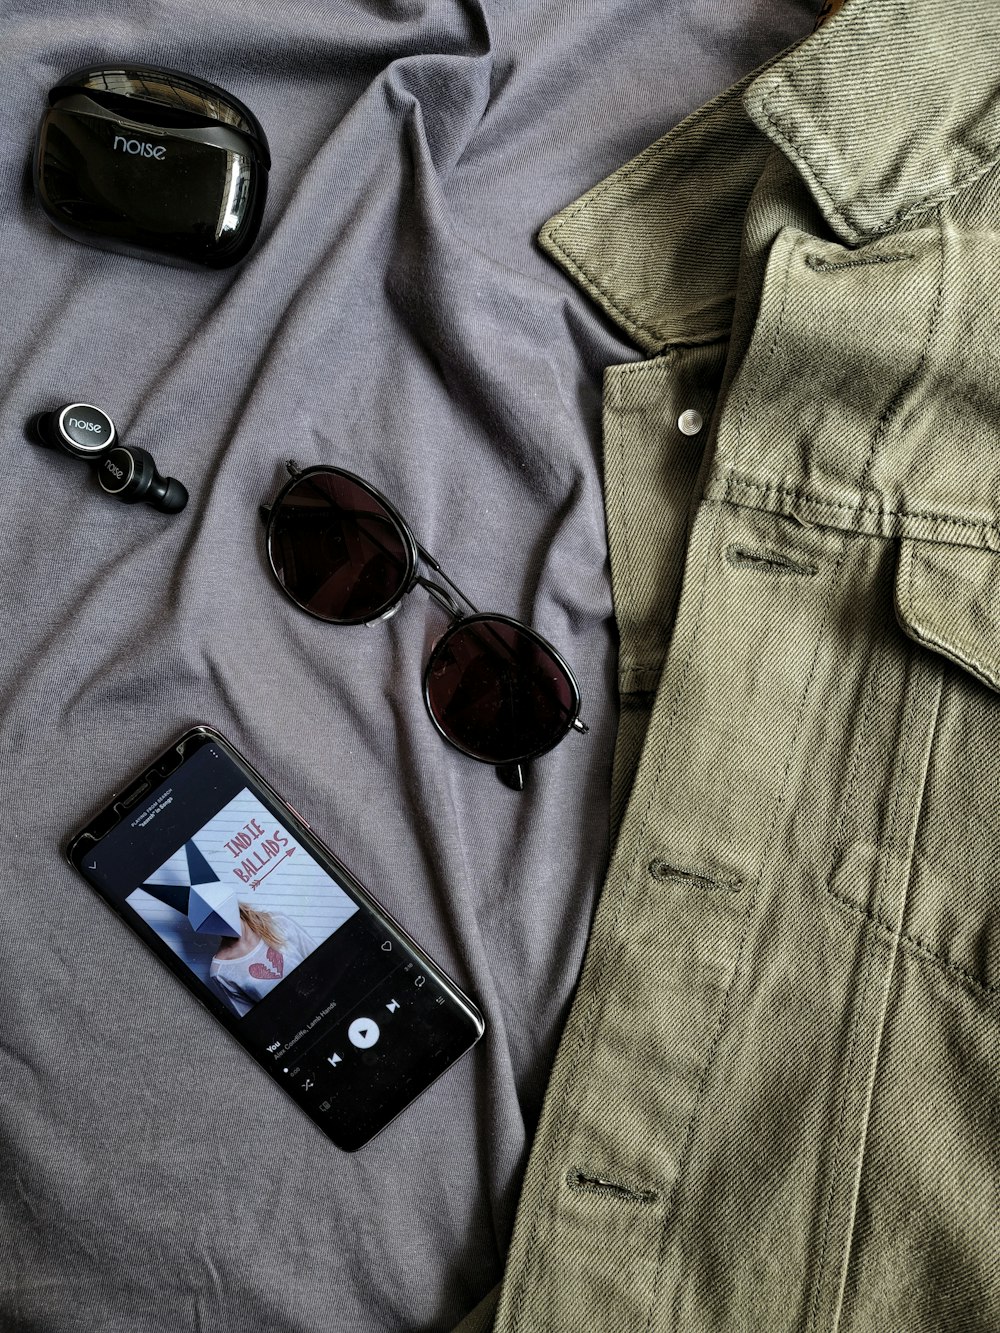 Schwarzes iPhone 4 neben braun gerahmter Sonnenbrille und grauem Jeans-Button-Up-Shirt